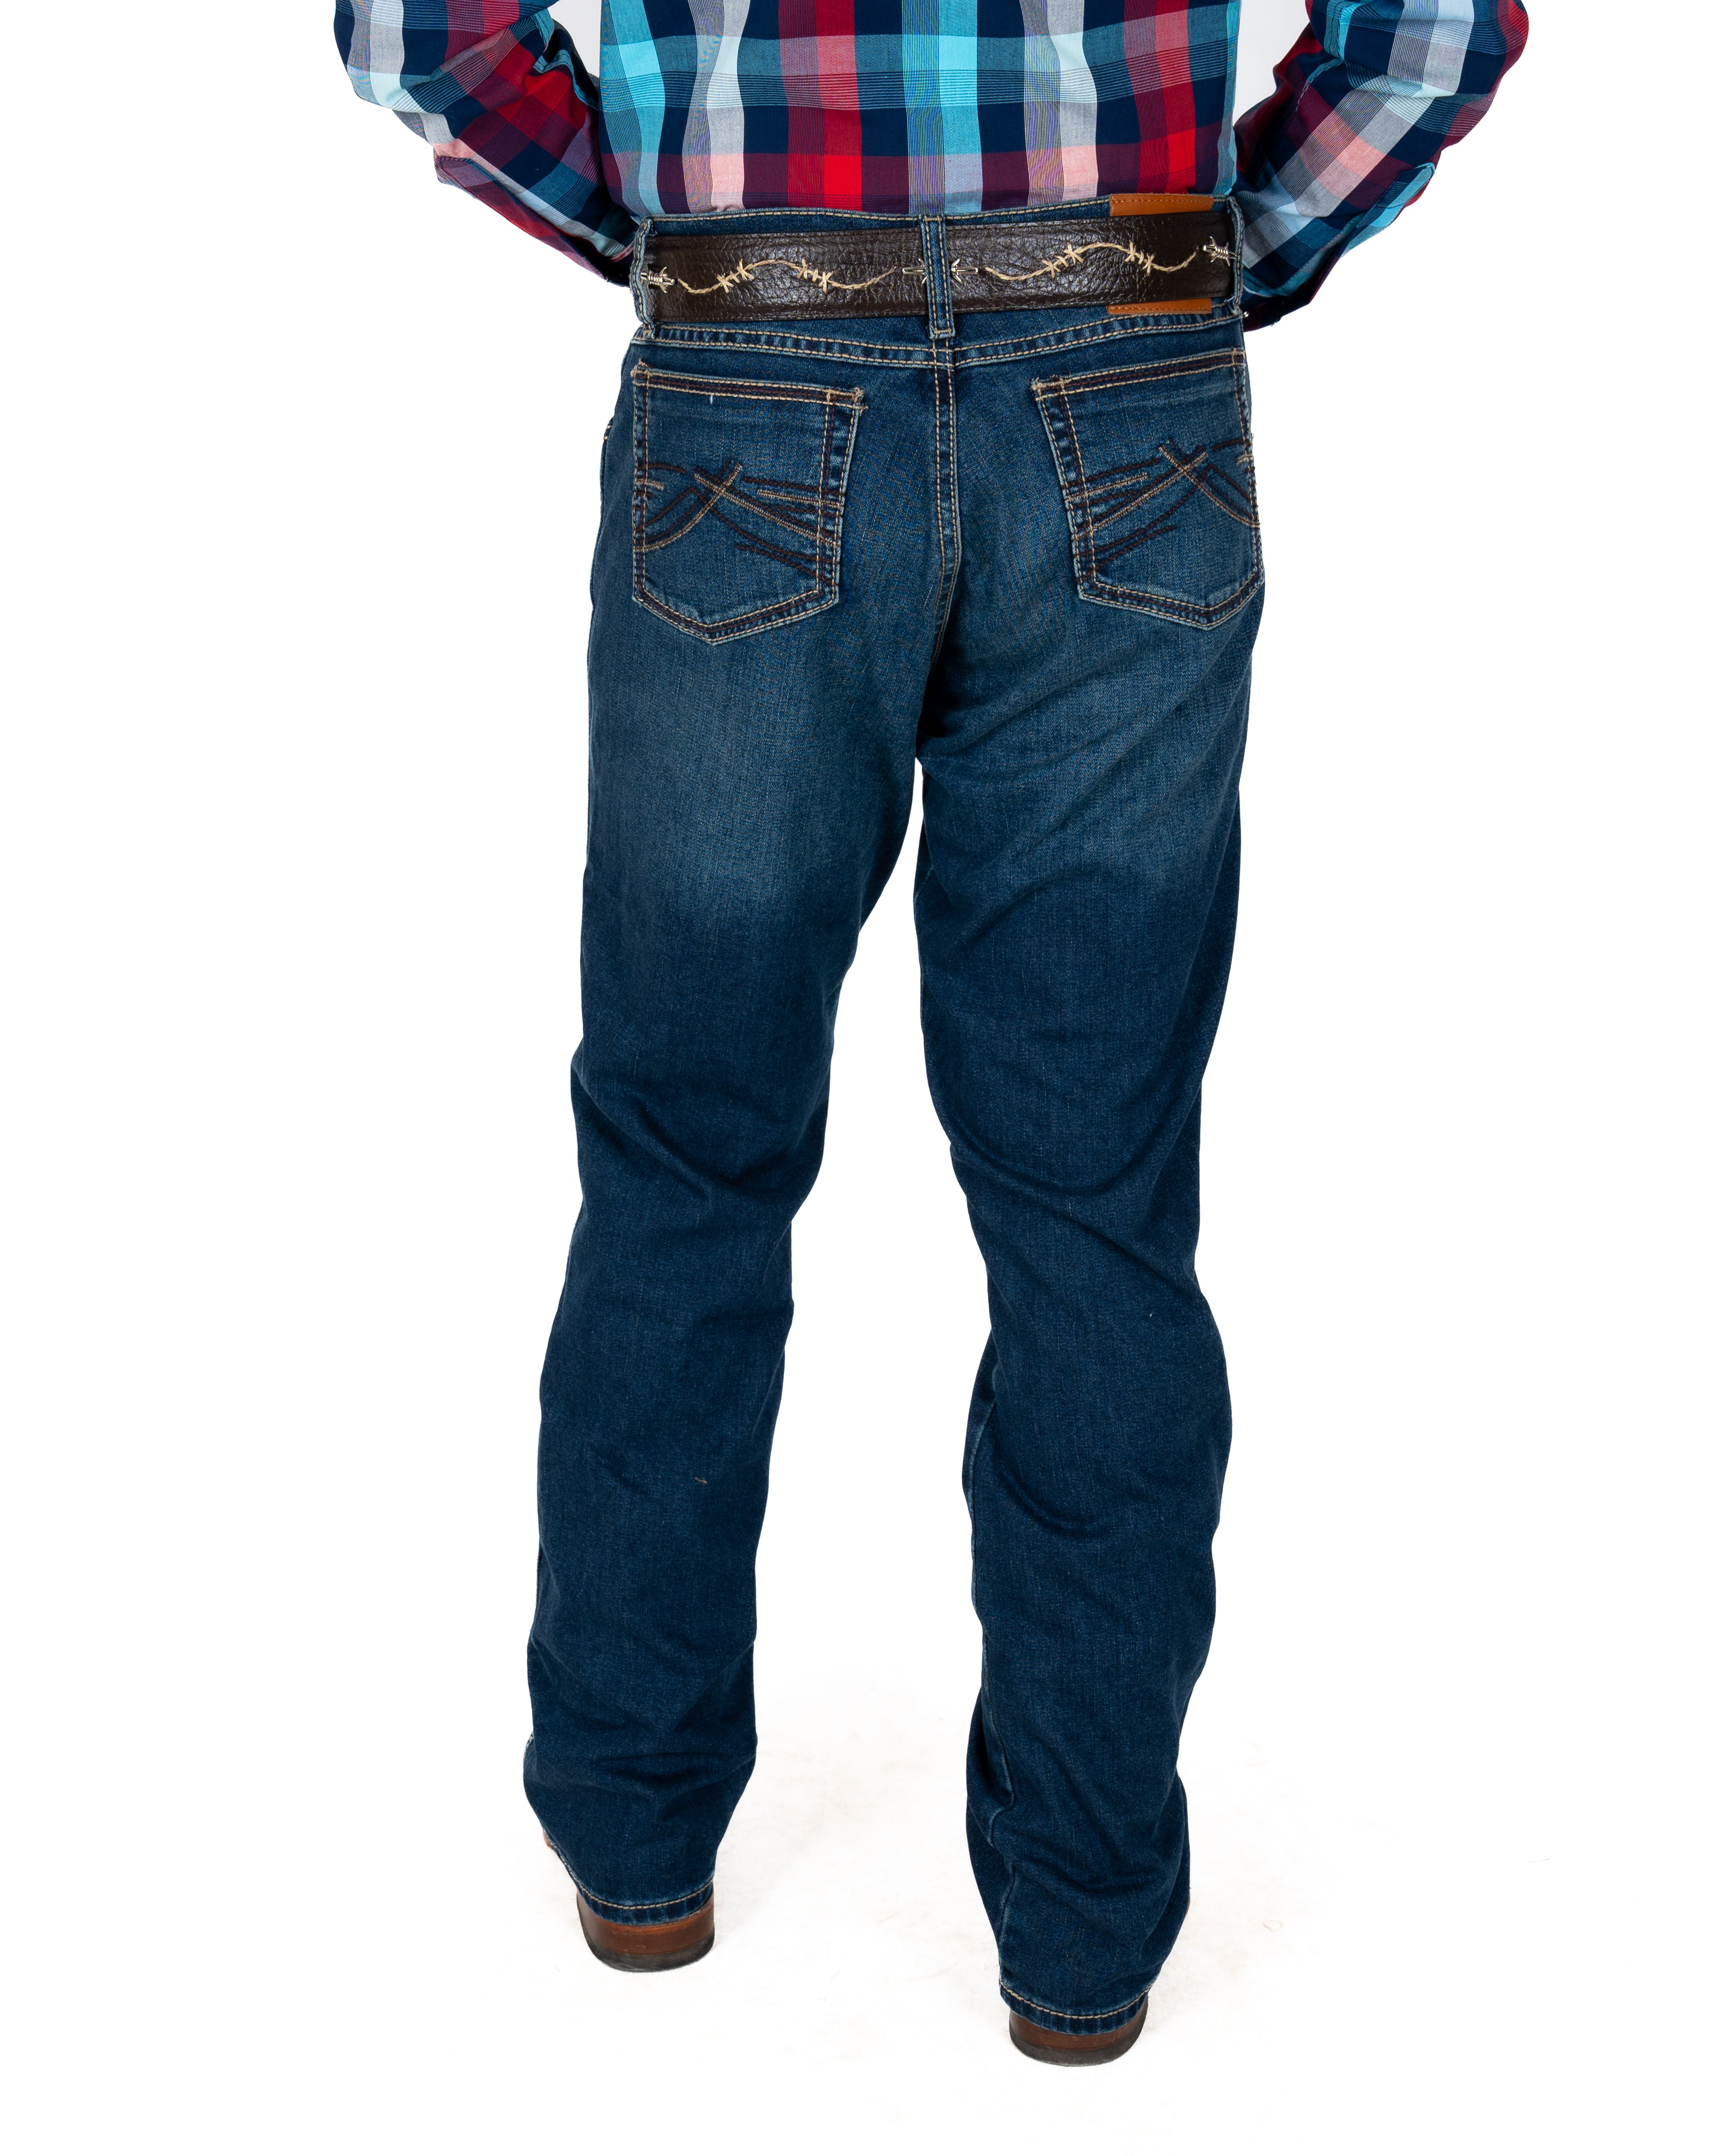 Jeans Wrangler Slim Boot 20 X Caballero